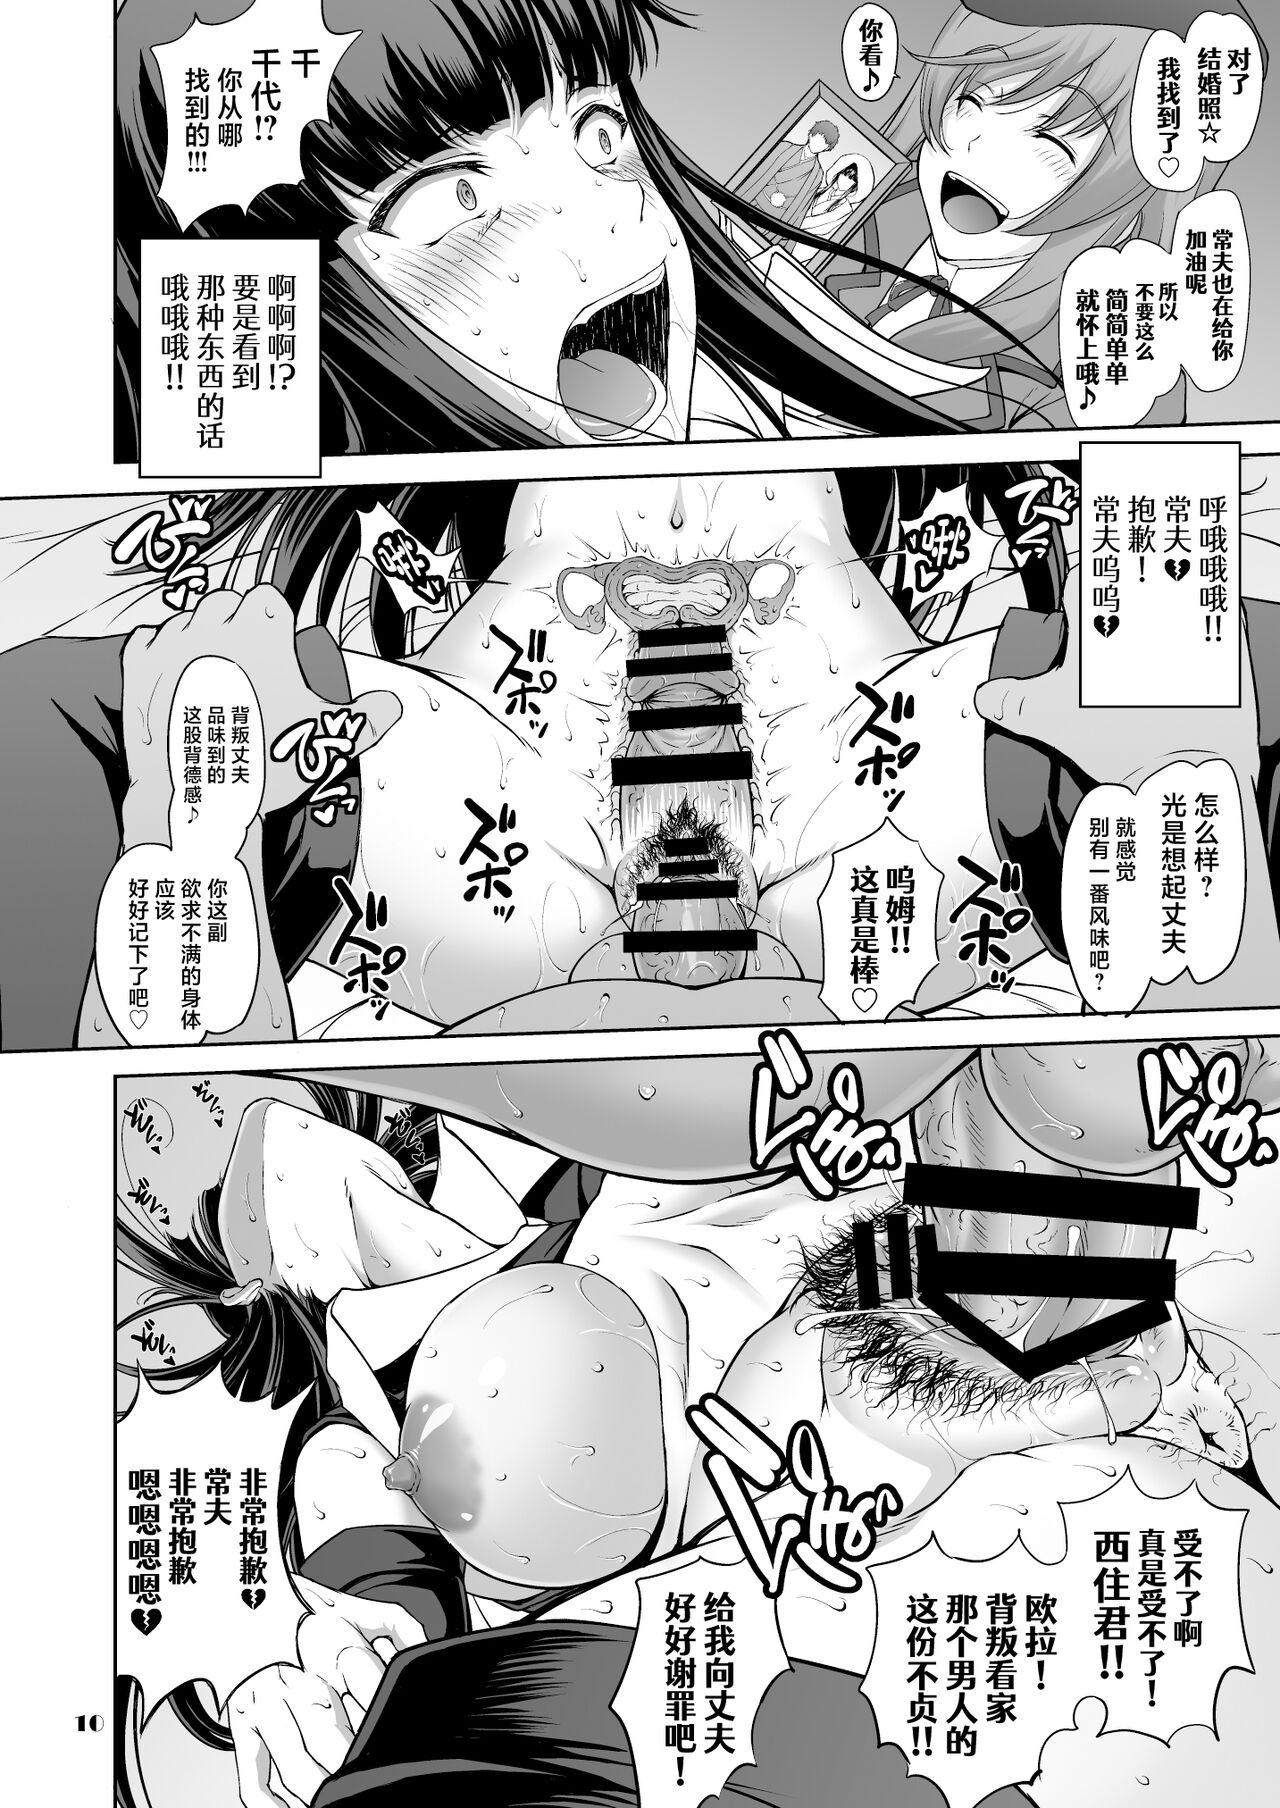 Passivo Iemoto no Hyakuya Taetara Soku Kaihou! Jikkyou Tanetsuke Namahaishin - Girls und panzer Gozo - Page 10